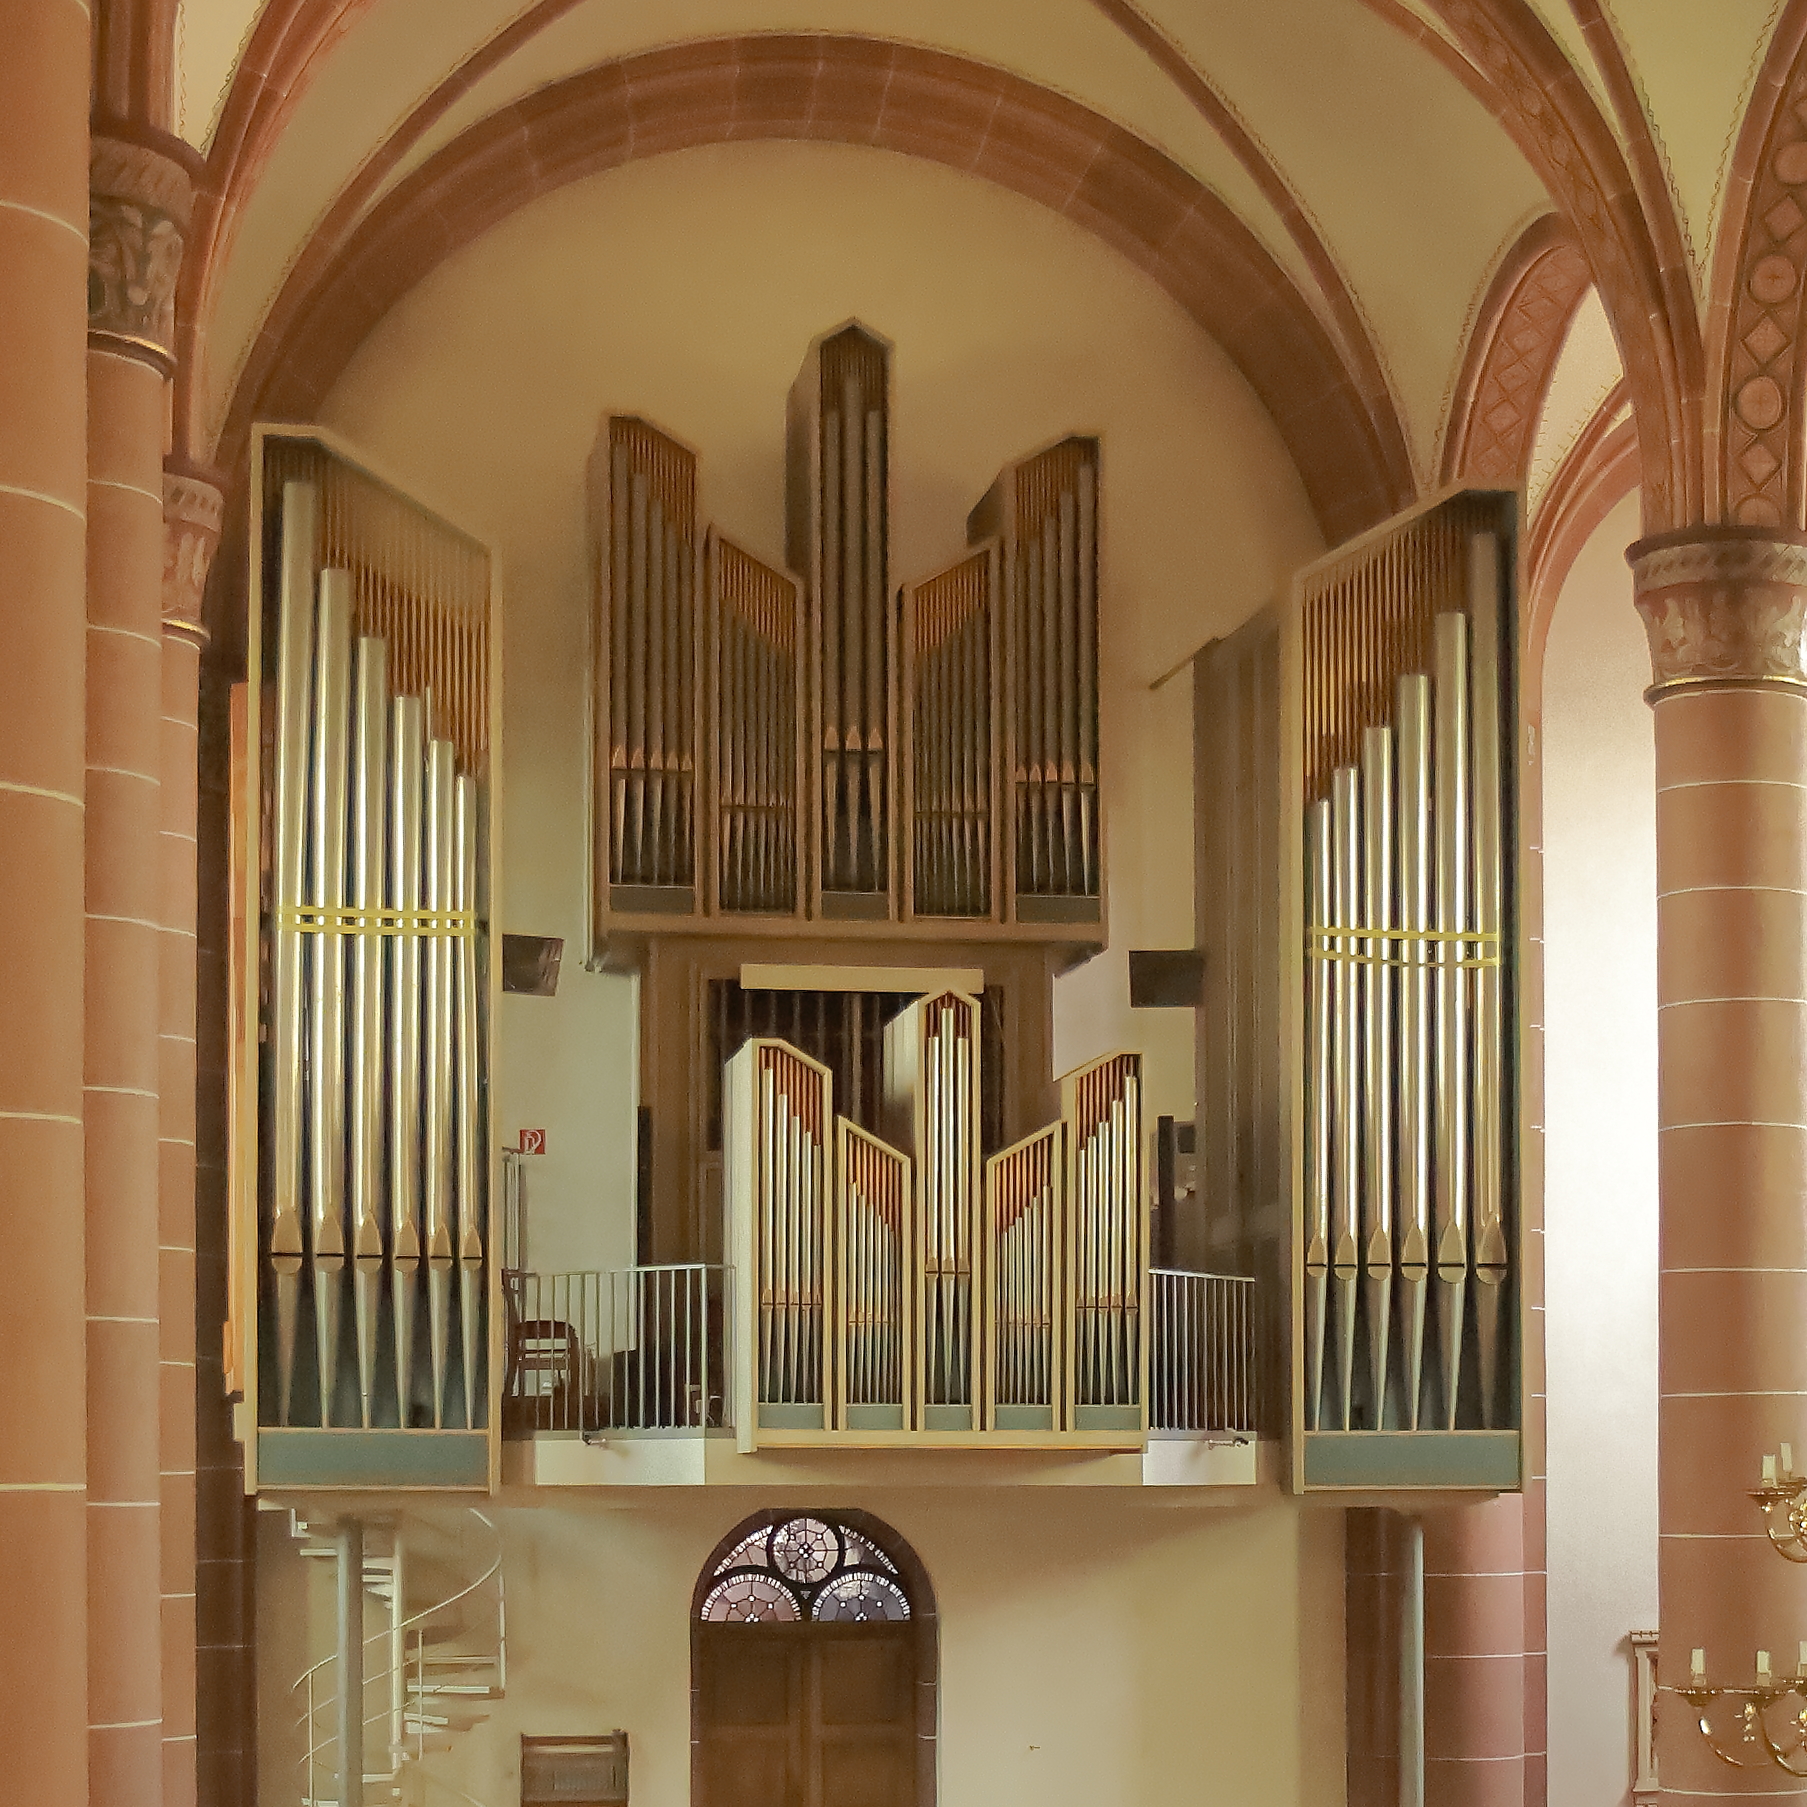 Orgel in St. Peter und Paul Medebach